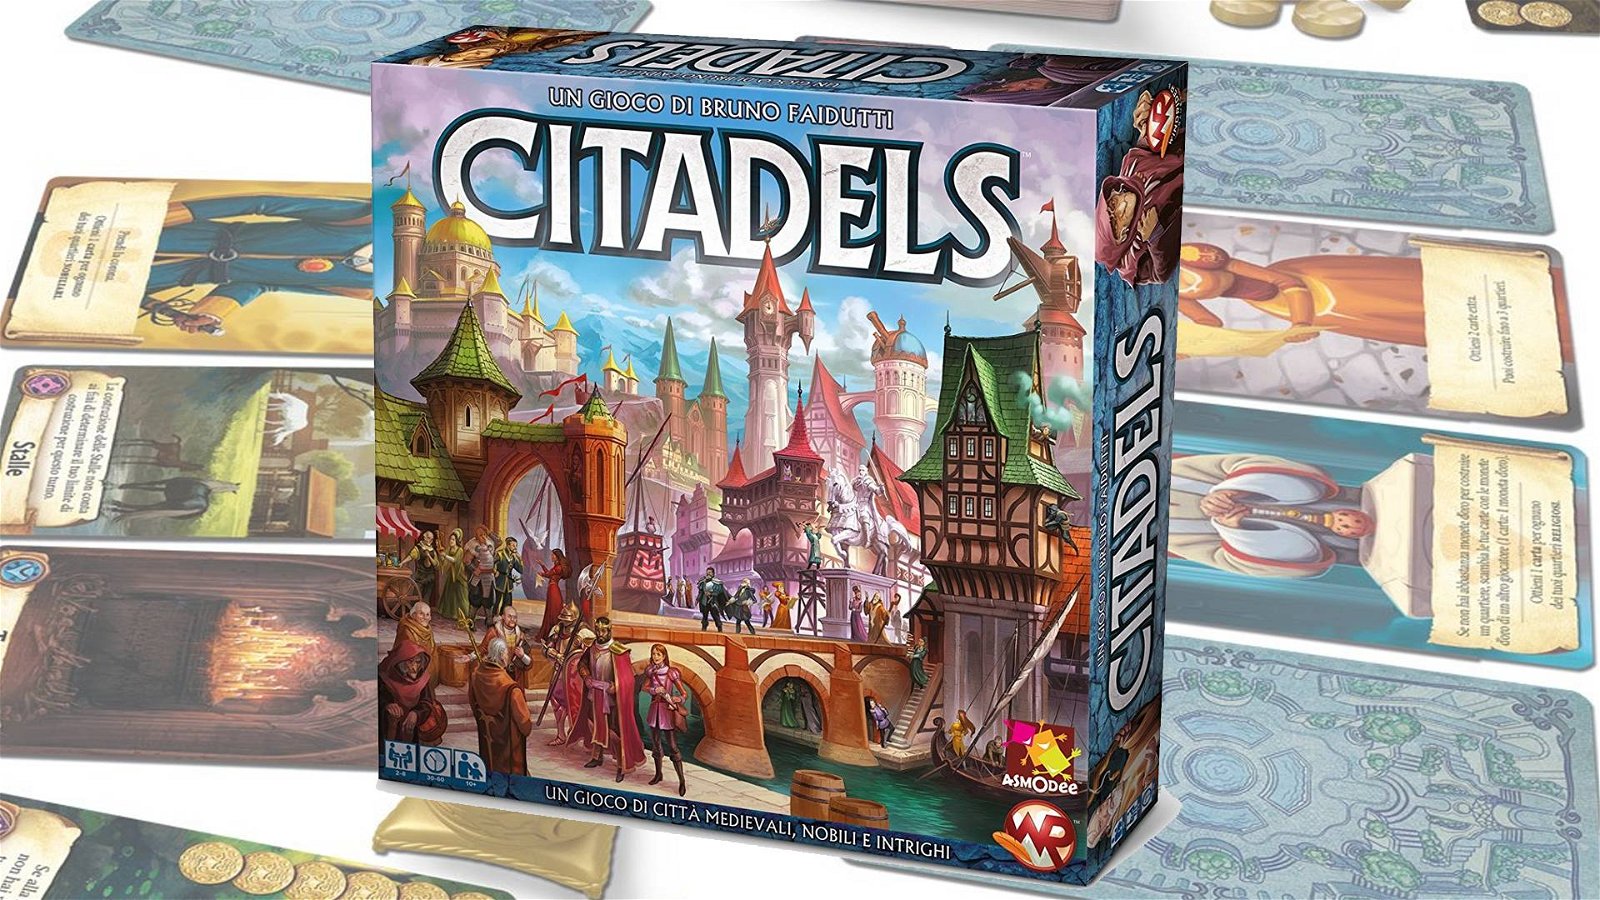 Immagine di Citadels la recensione. Un gioco da tavolo fantasy ambientato nel medioevo